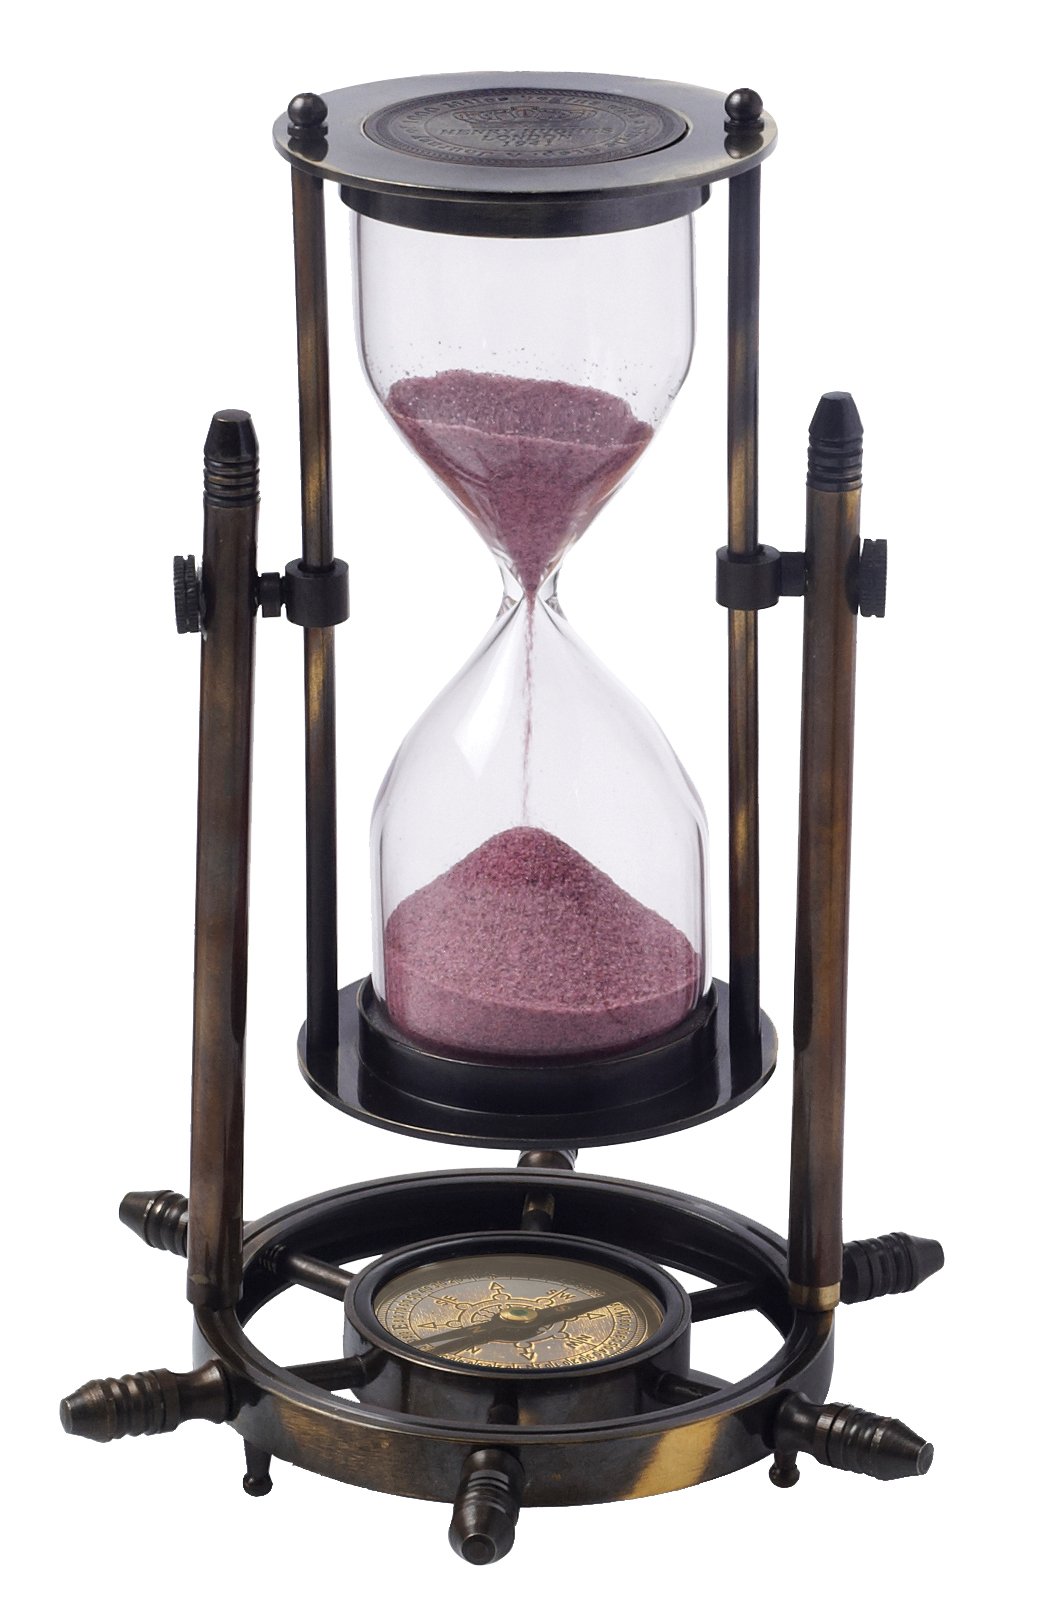 שעון חול מנחושת מהודר במעמד שולחני עם מצפן ימאות.
5 דקות.
גובהה 21 ס